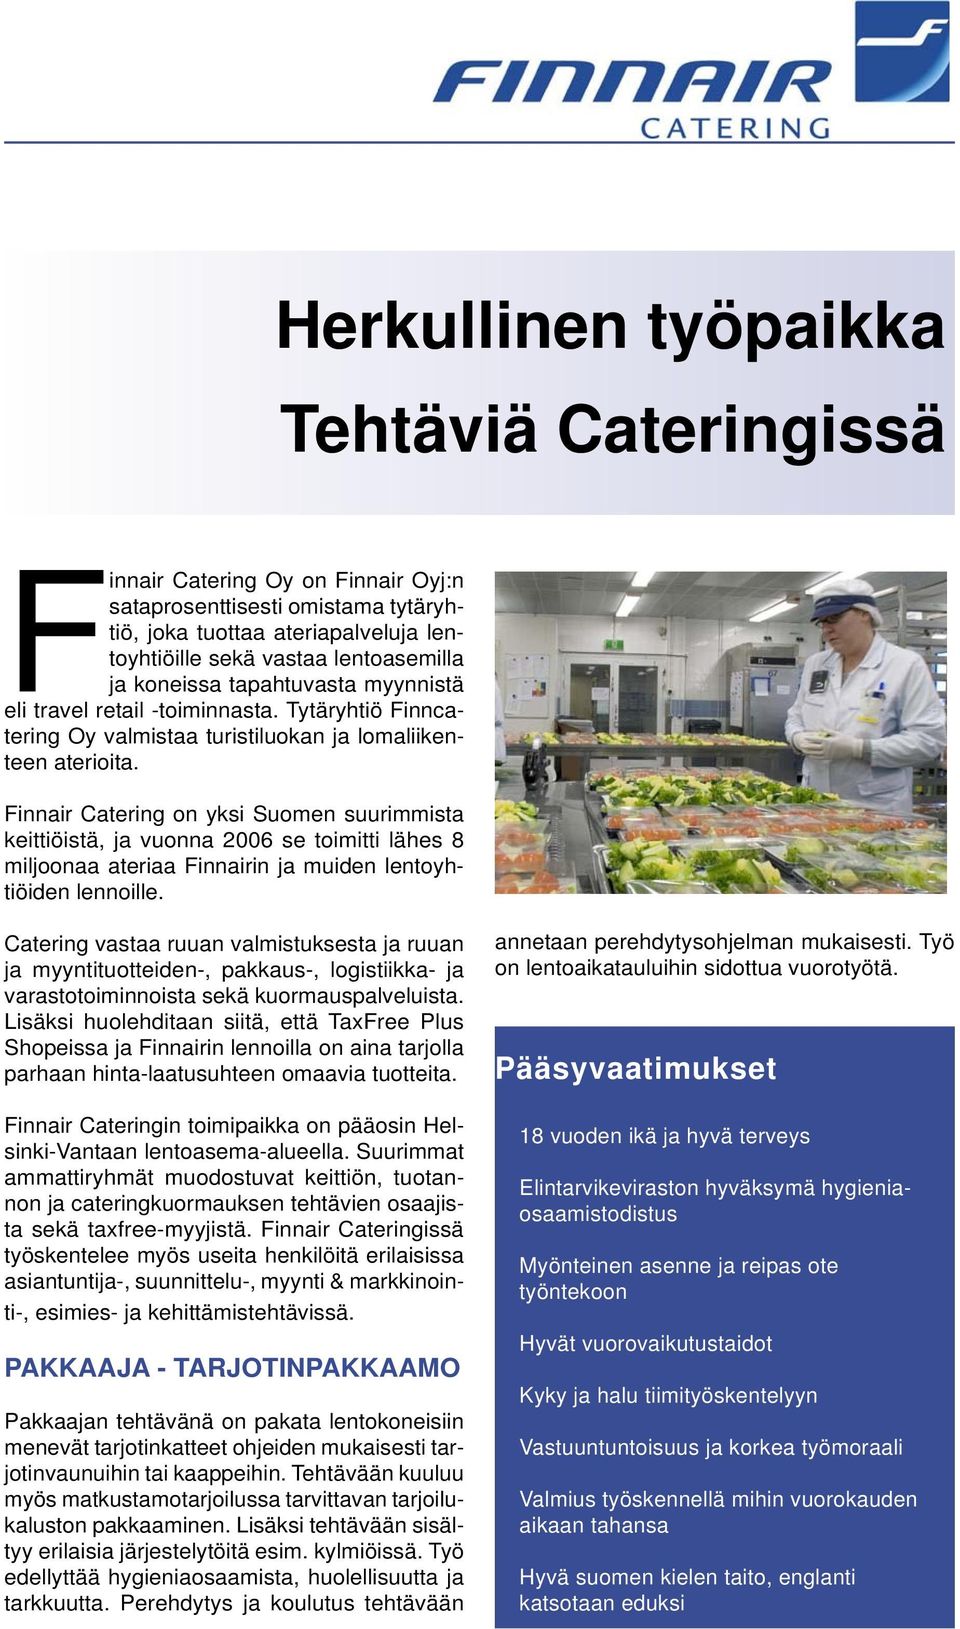 Finnair Catering on yksi Suomen suurimmista keittiöistä, ja vuonna 2006 se toimitti lähes 8 miljoonaa ateriaa Finnairin ja muiden lentoyhtiöiden lennoille.